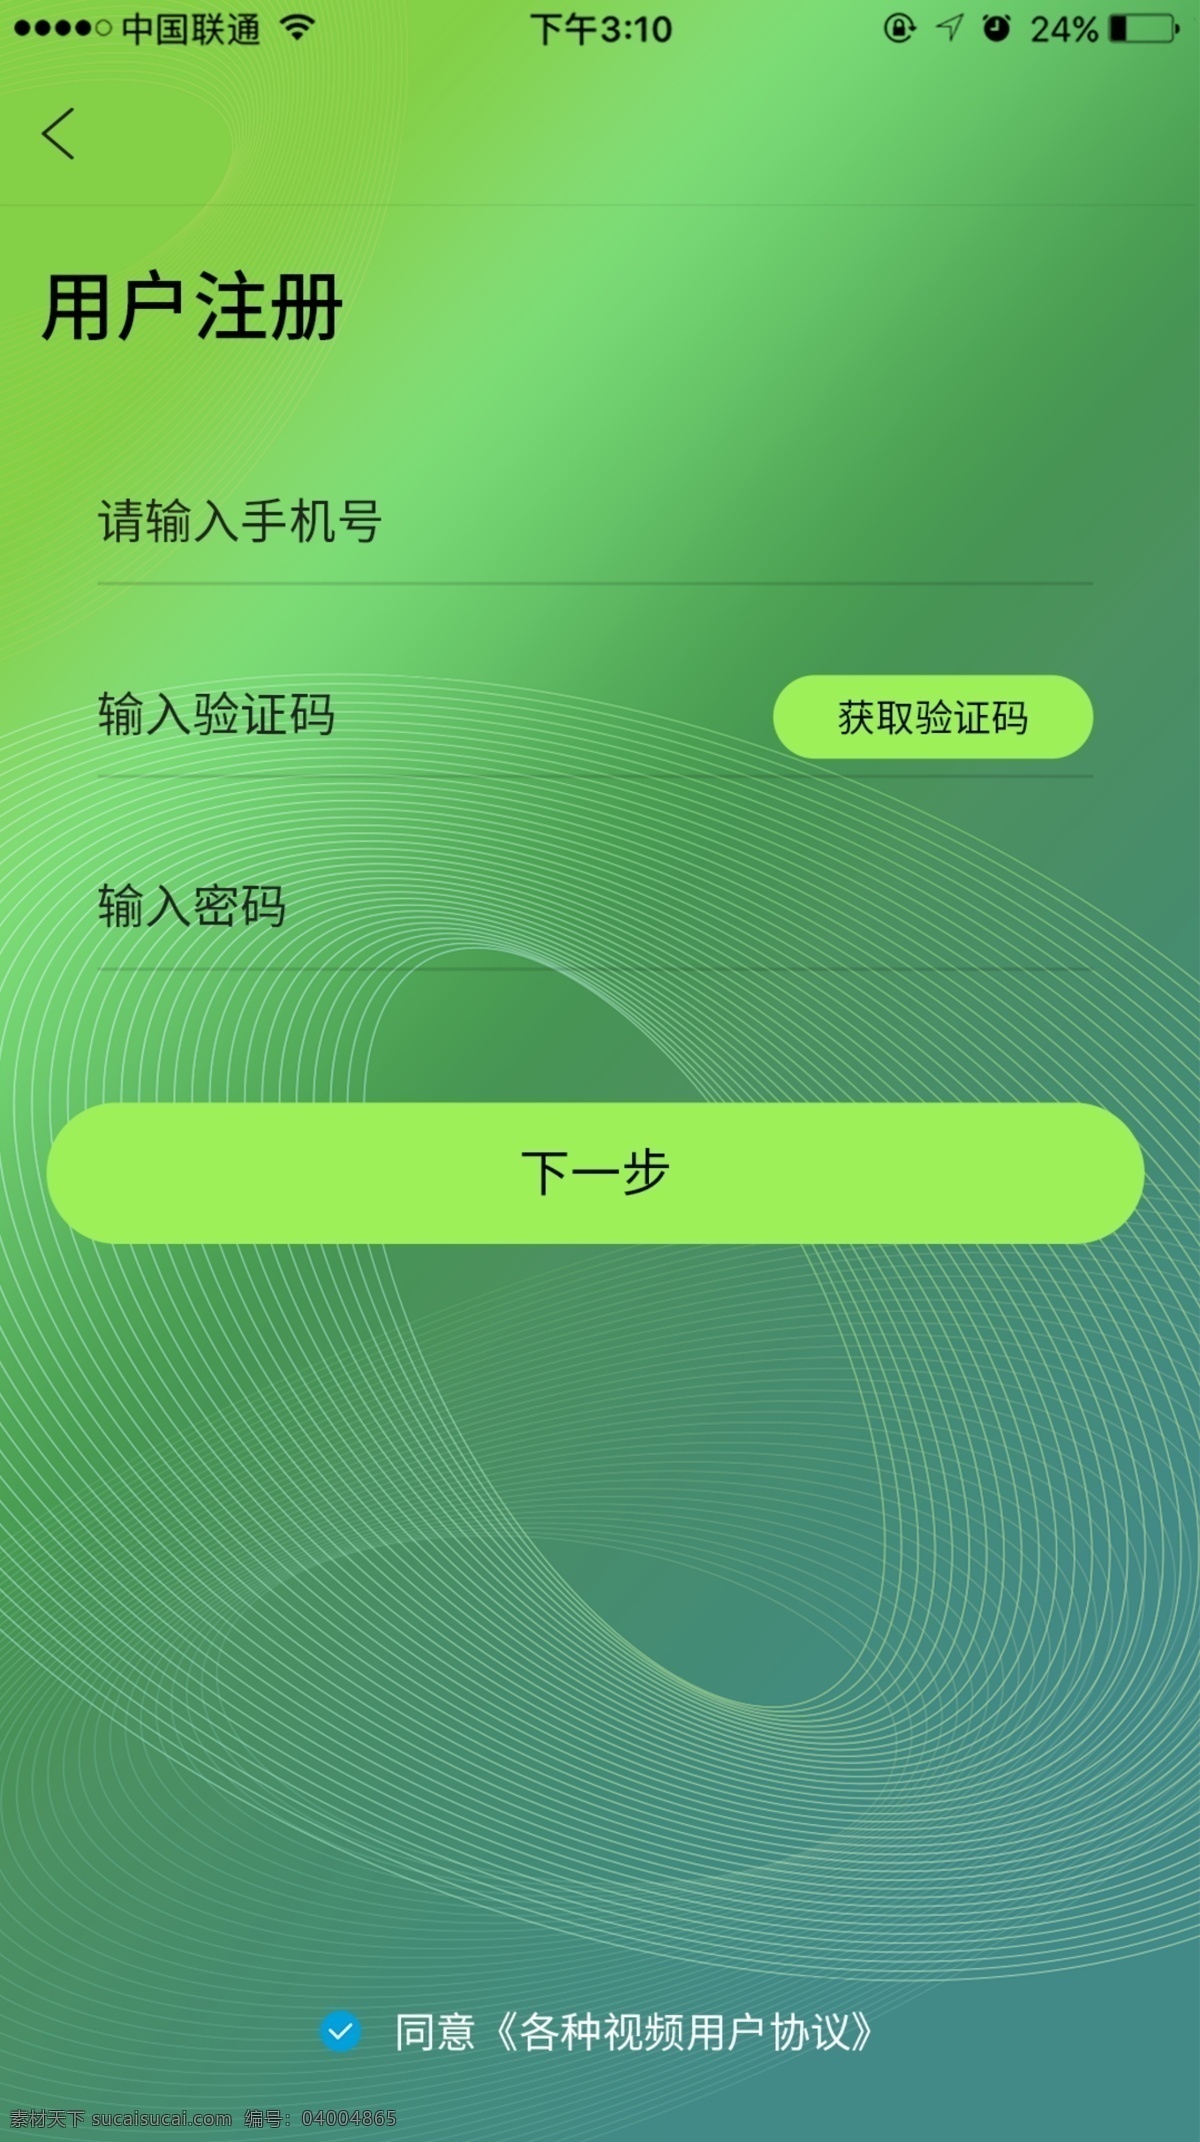 注册 页面 界面设计 登录注册 ui设计 app界面 绿色 用户注册